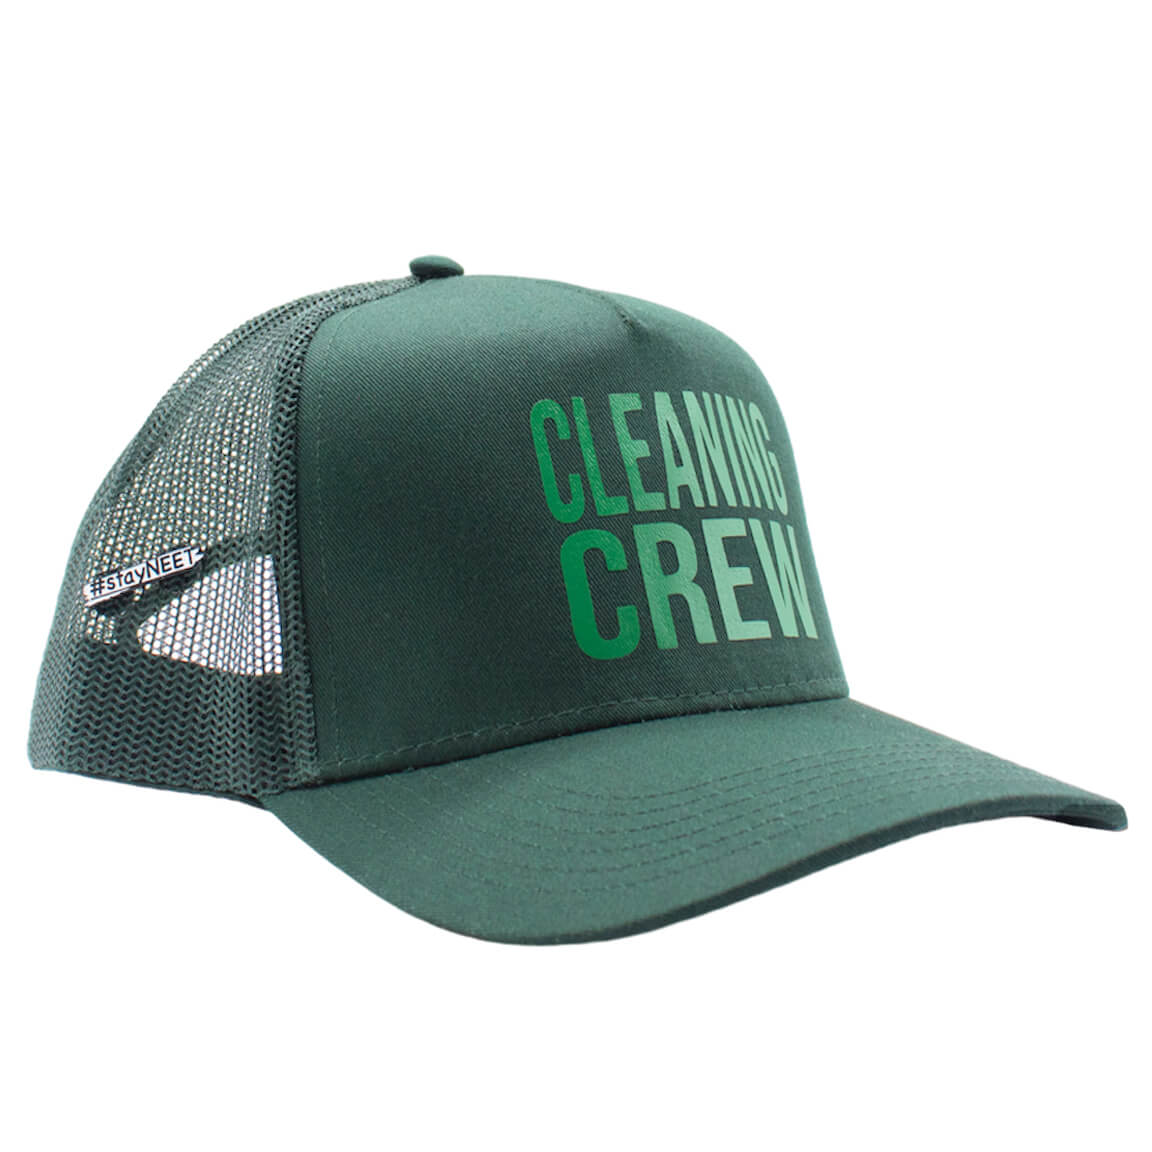 Men's Dark Green Mesh Trucker Hat